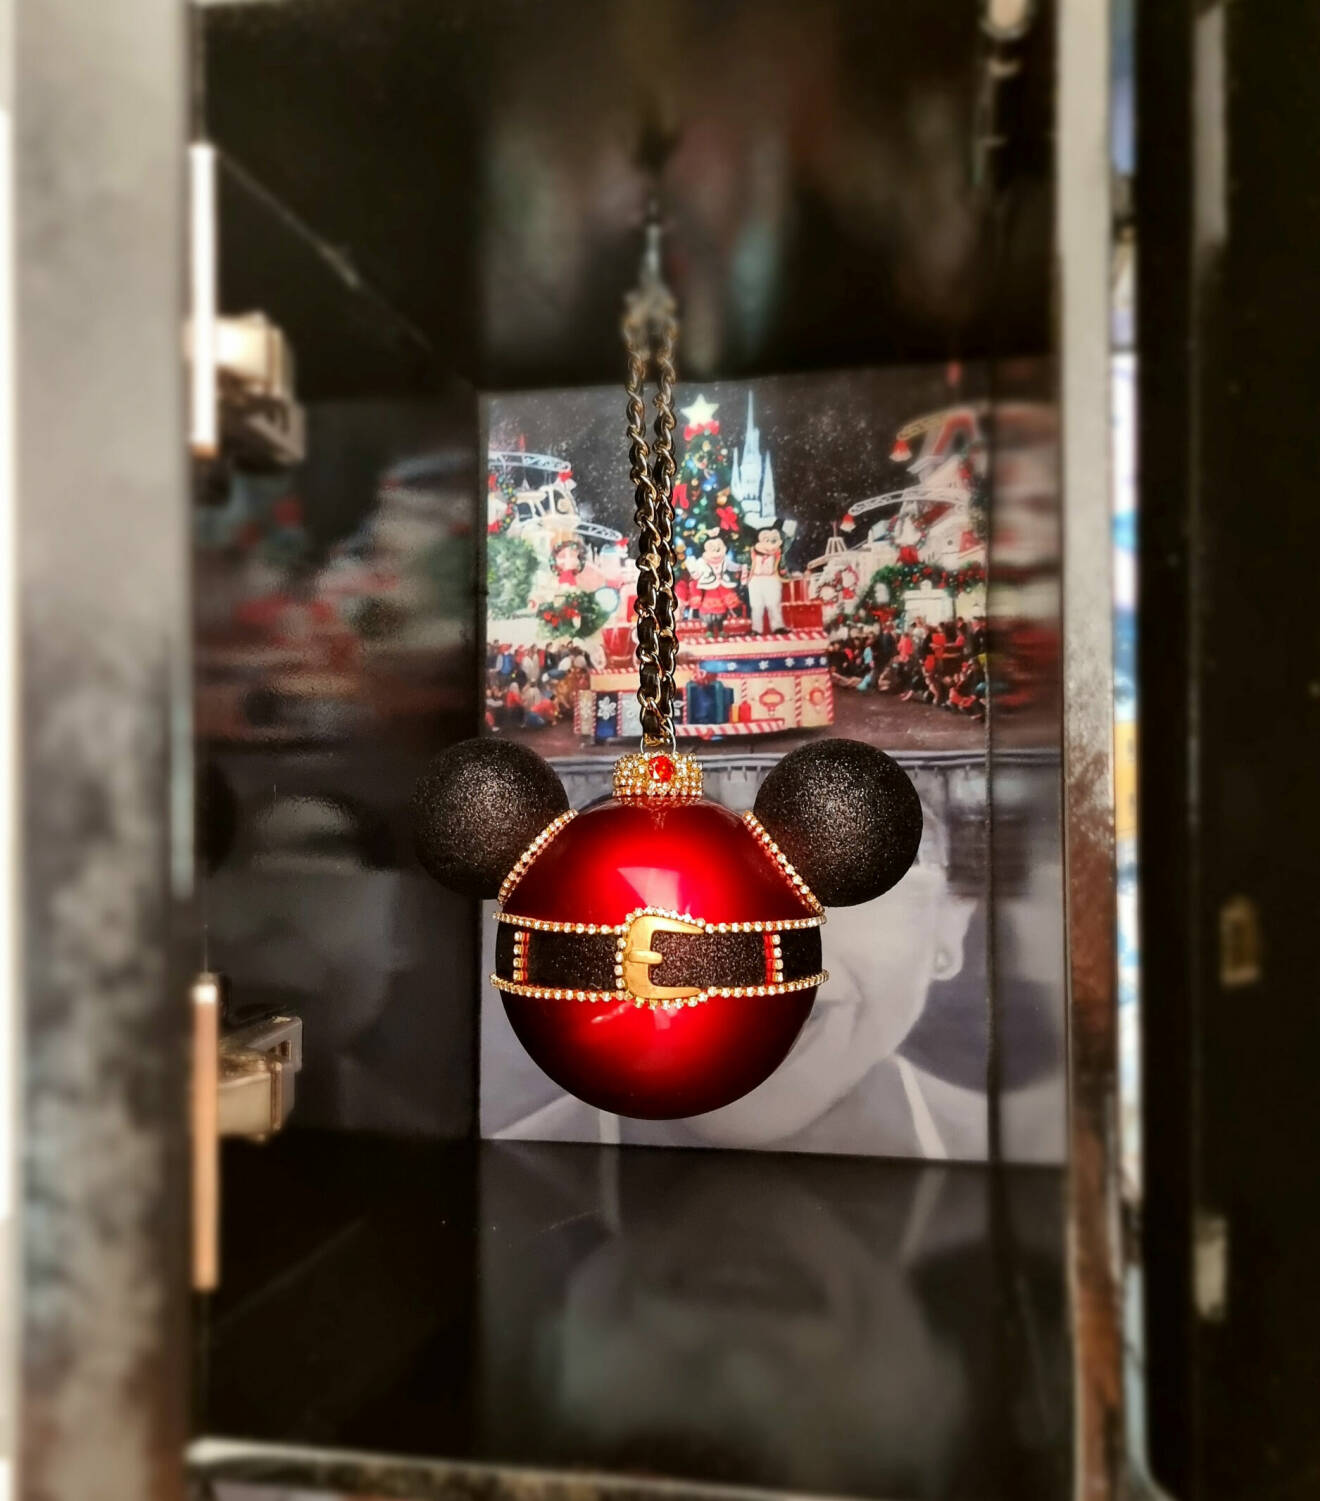 Florida-fönstret visar en julgranskula med Mickey Mouse-öron.